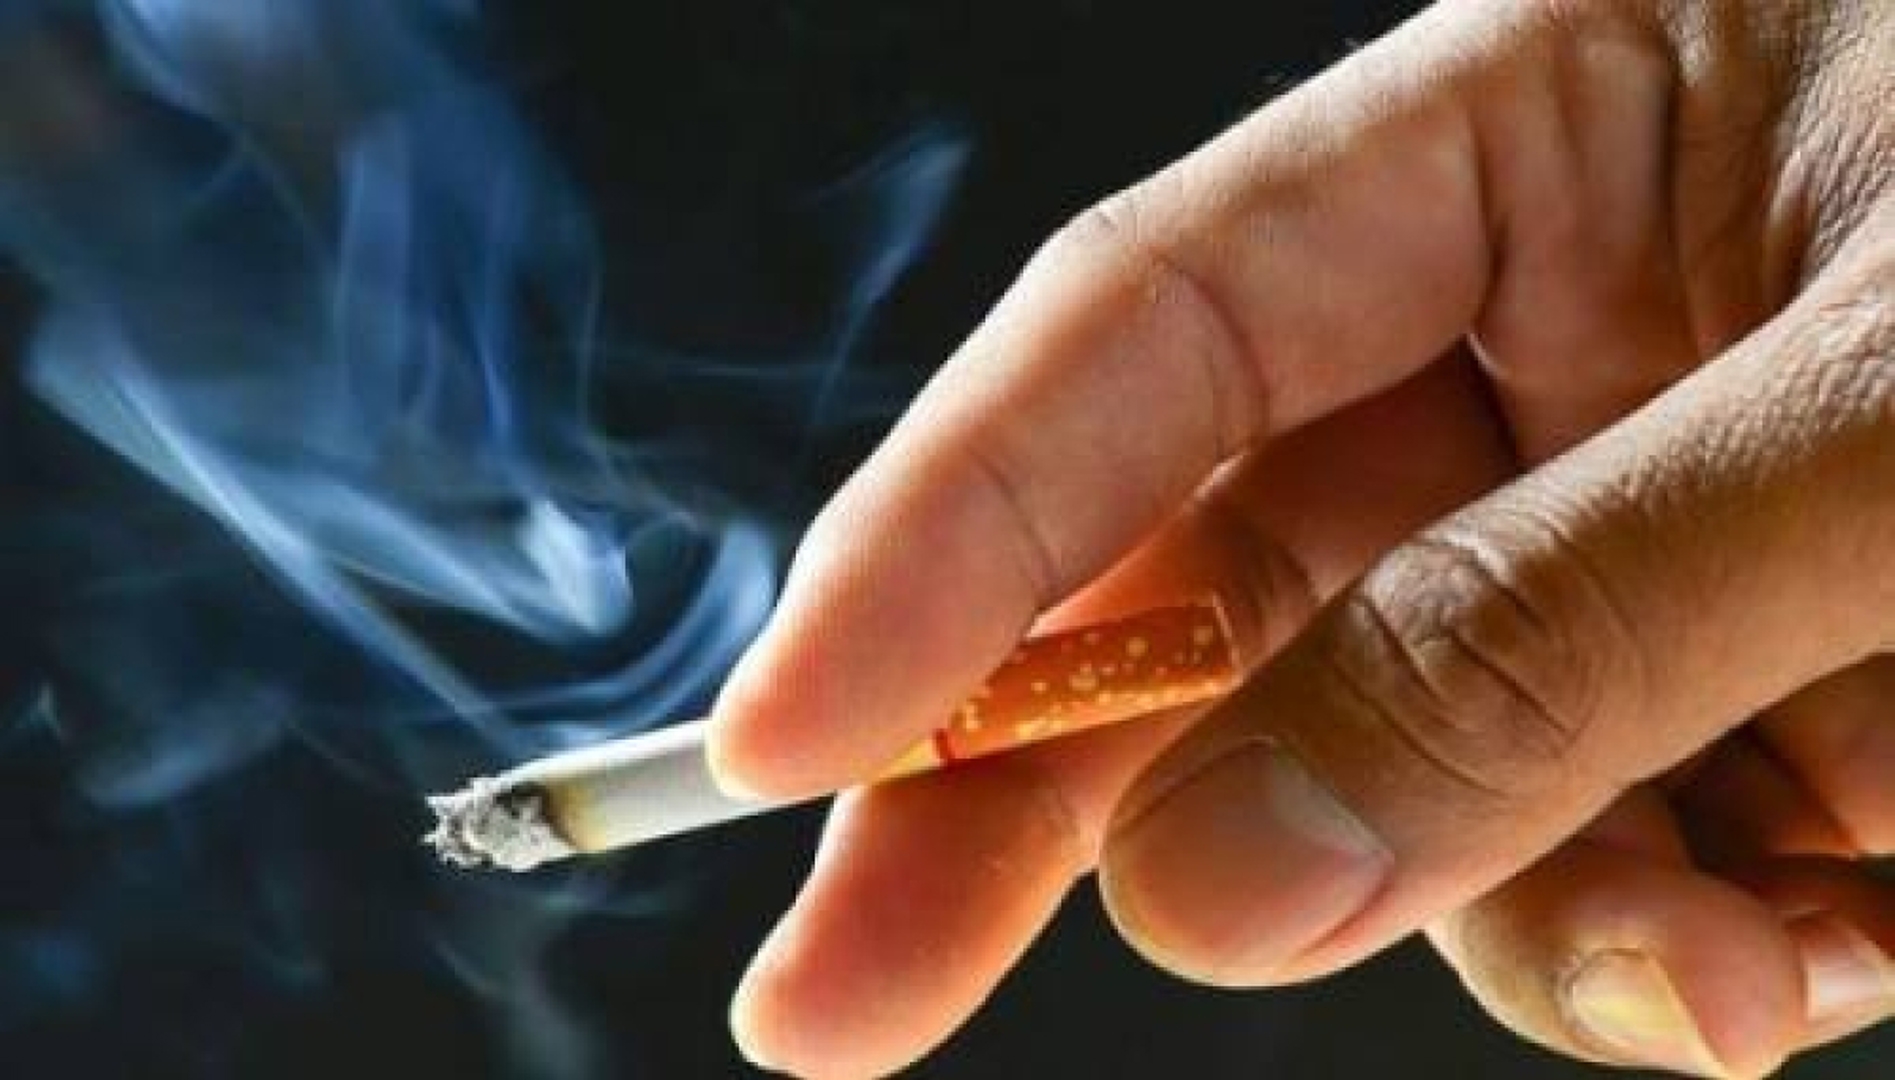 العراقيون ينفقون 3 مليارات دينار يوميا على التبغ